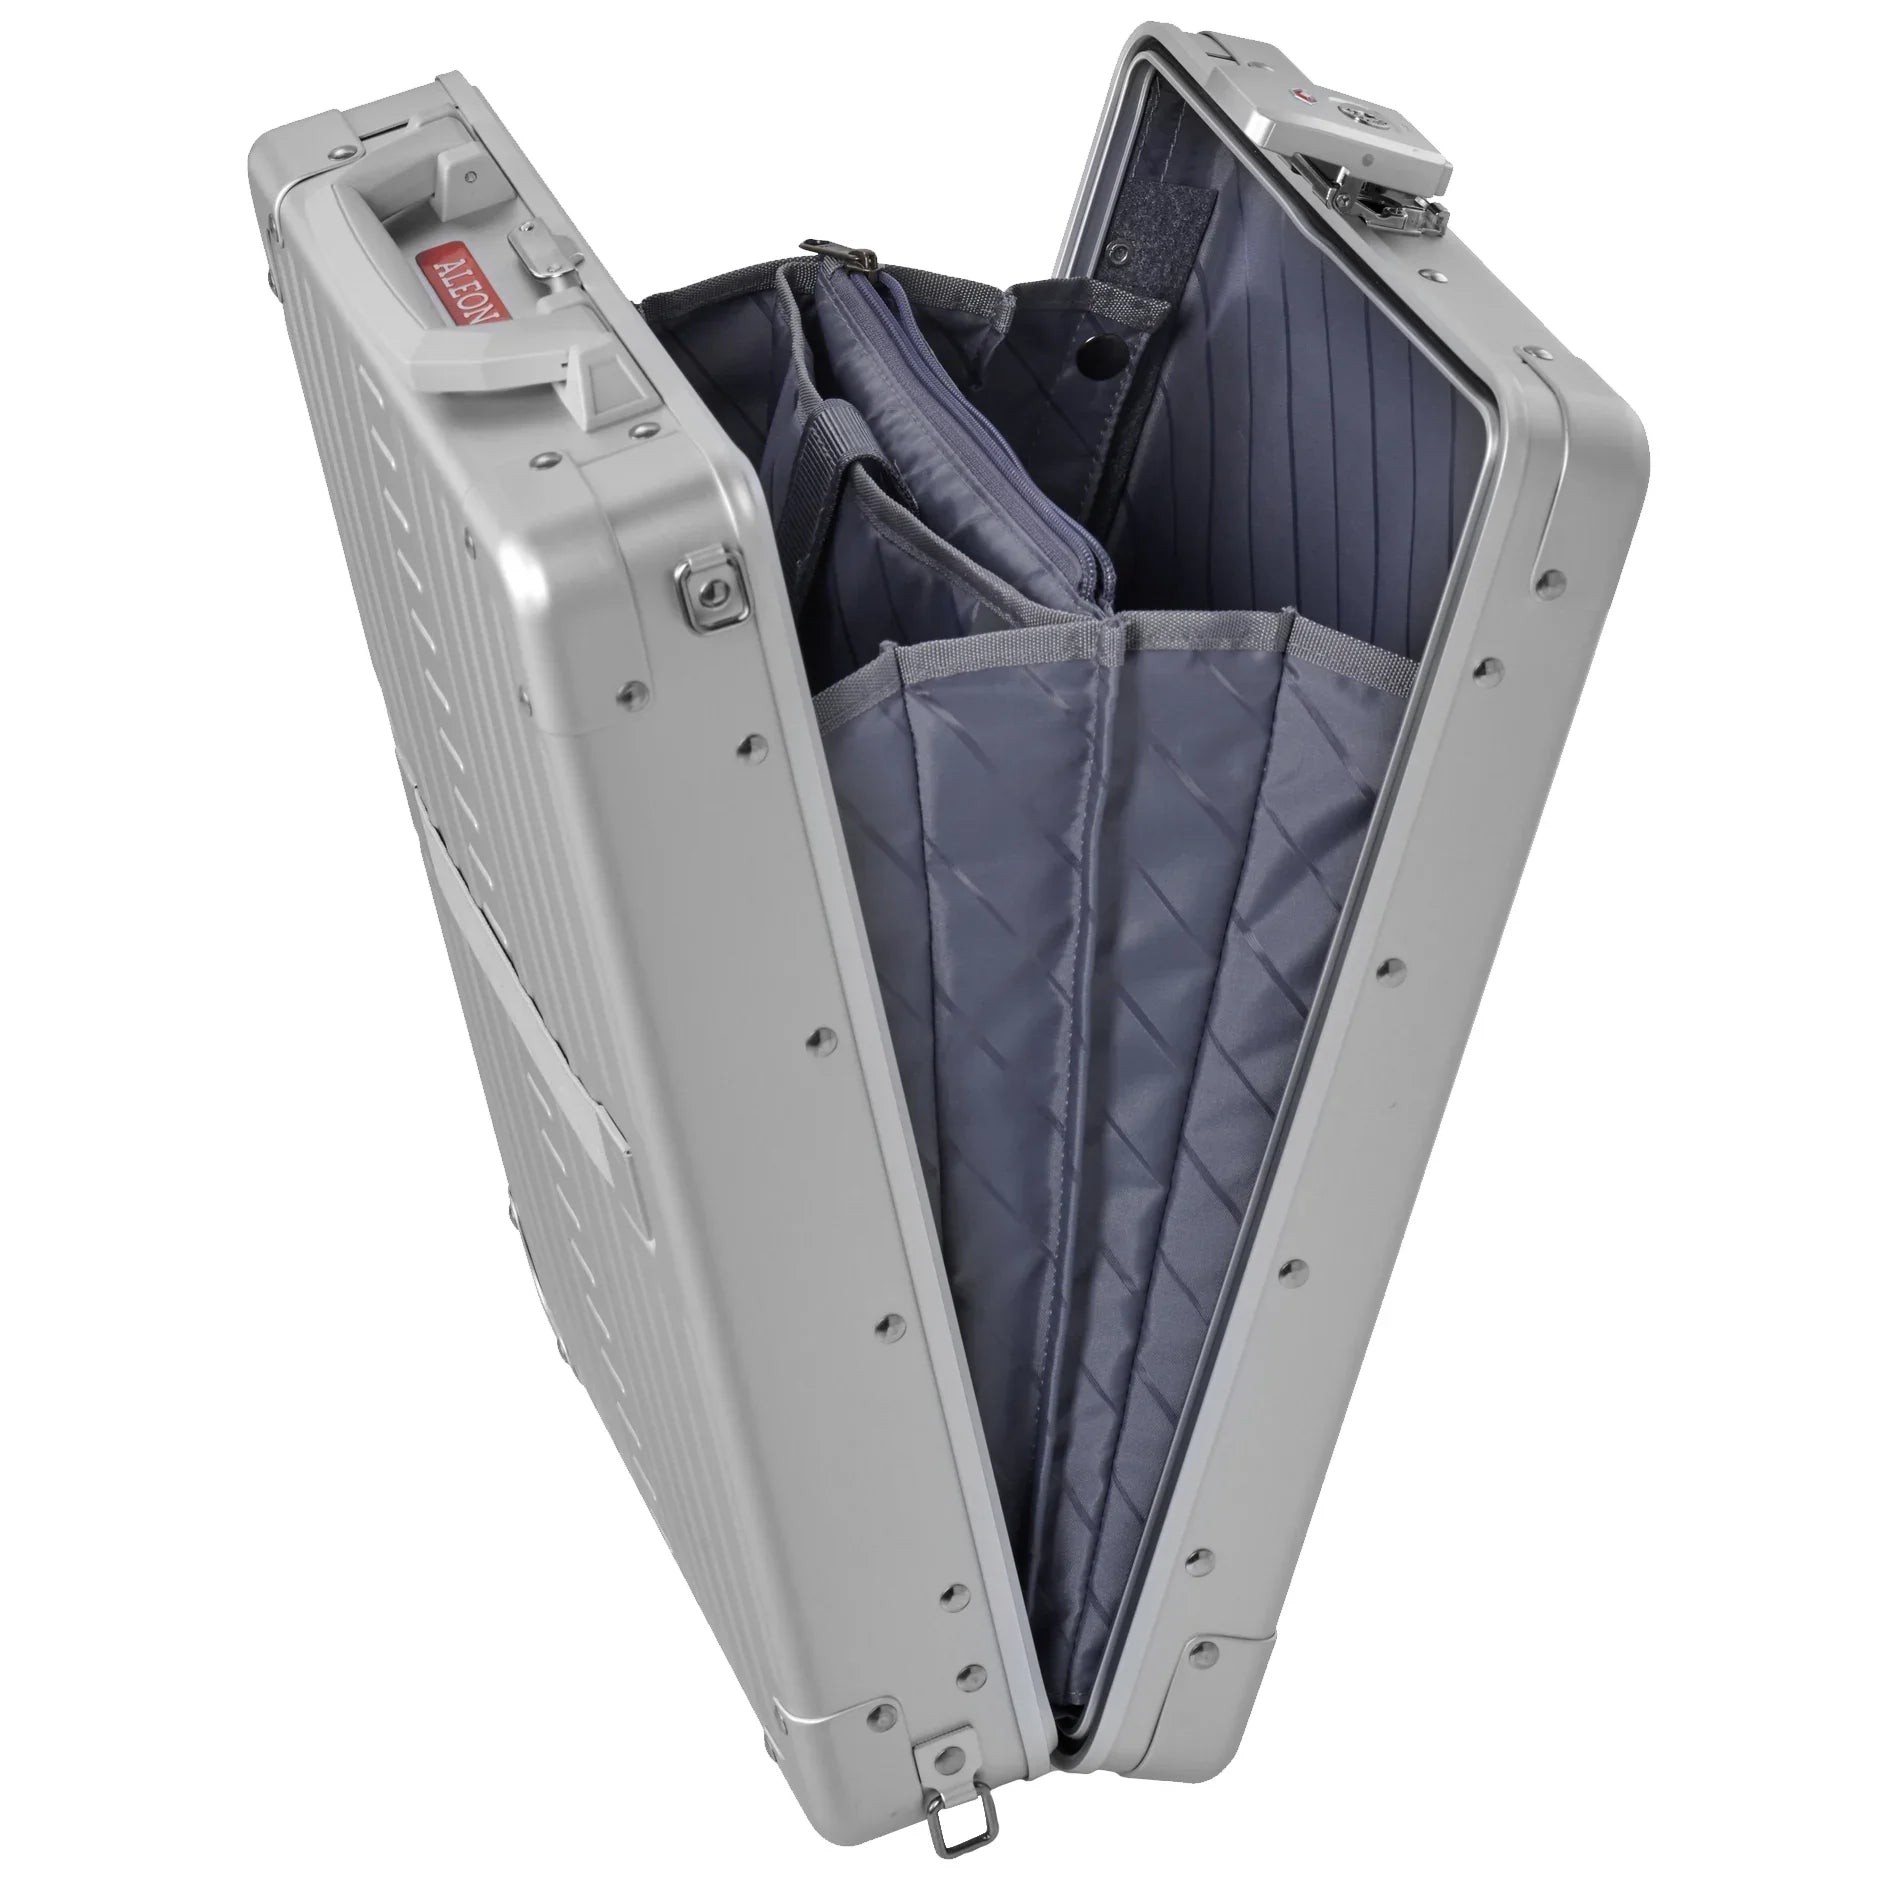 Aleon Vertical Aluminium Briefcase 42 cm - Platinum